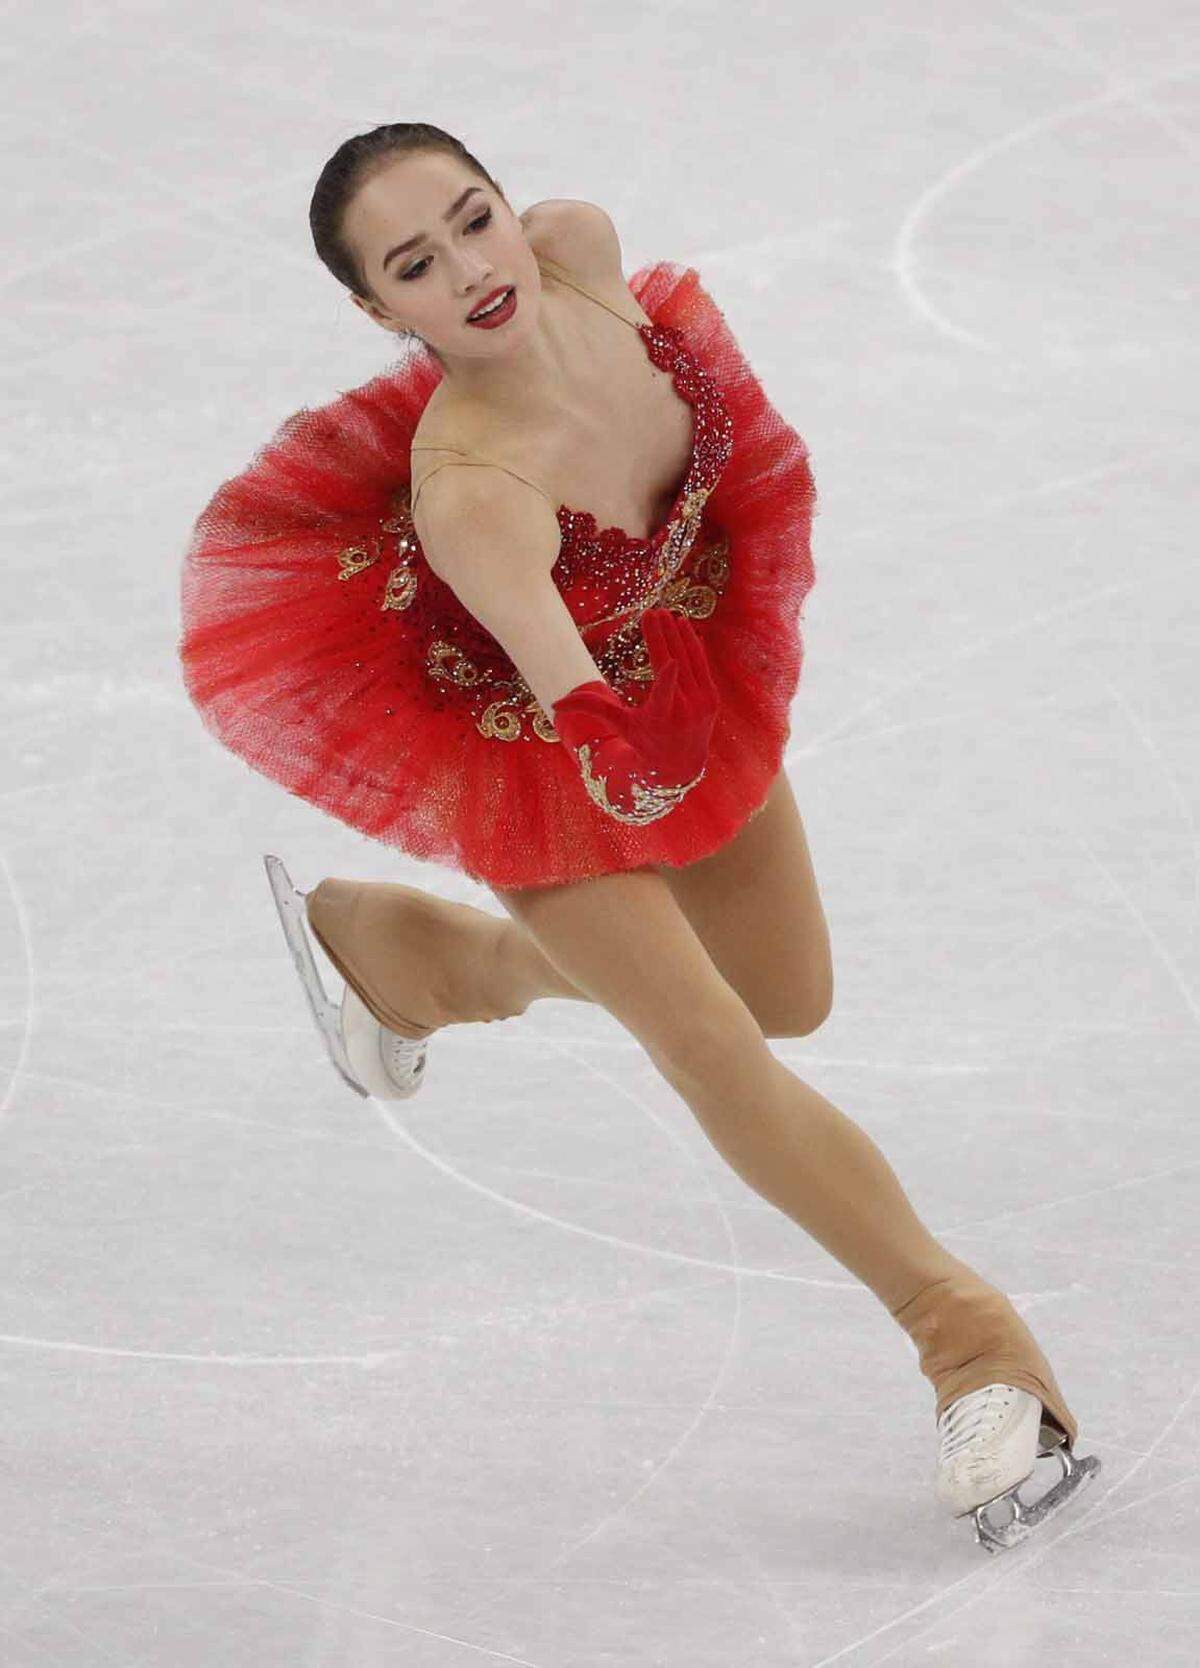 Dieser rote Engel kam Lipsinki heuer besonders nahe. Alina Sagitowa sicherte sich eine Goldmedaille in Pyeongchang mit nur 15 Jahren. Sie setzte sich gegen ihre größte Konkurrentin und Trainingspartnerin Jewgenia Medwedewa durch, die davor seit 2015 keinen Wettbewerb mehr verloren hatte.